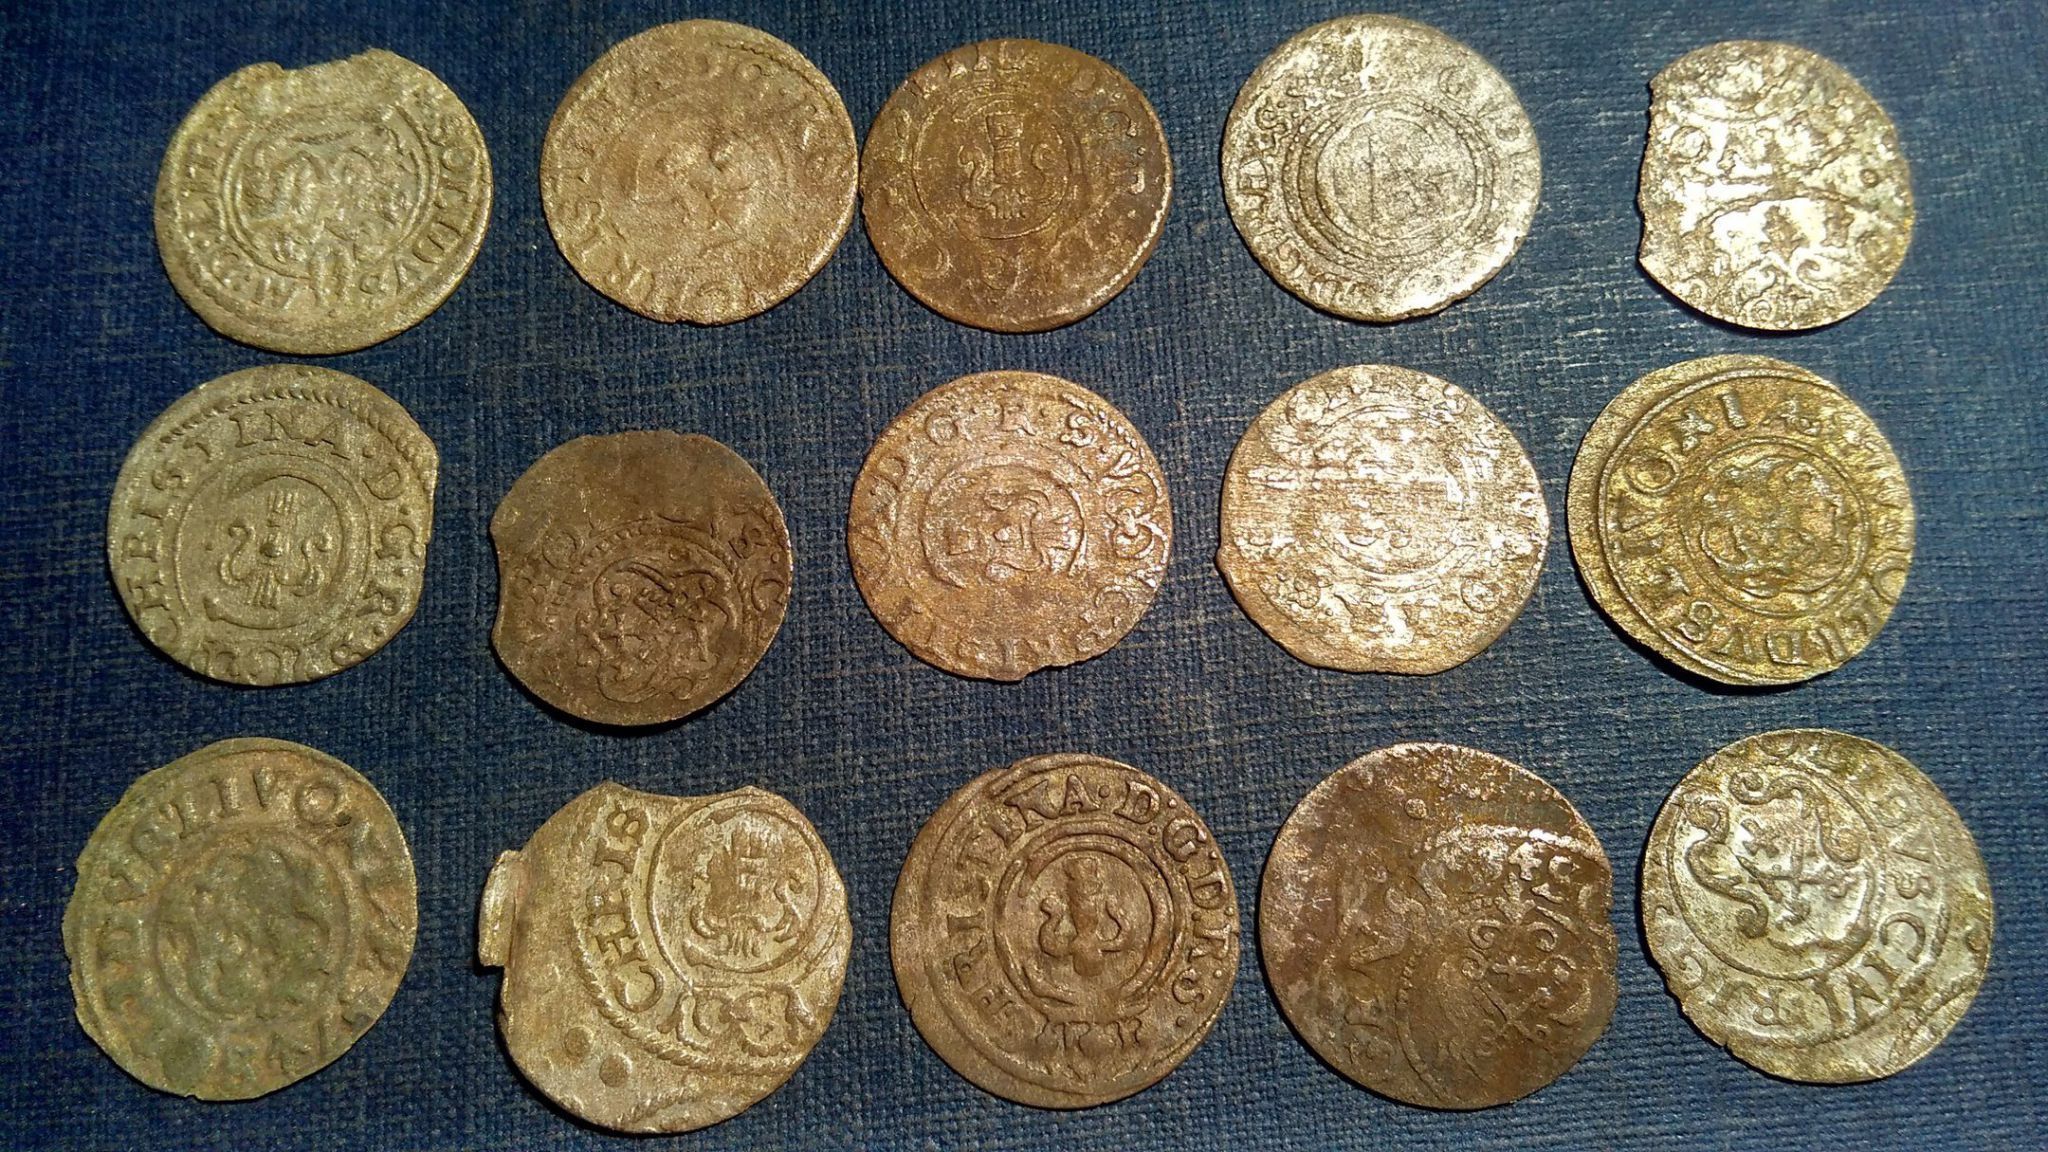 Год чеканки монеты. Медные монеты Европы 17 века. Средневековые монеты Западной Европы. Золотые монеты Европы 17 века. 17 Век чекан монетный.